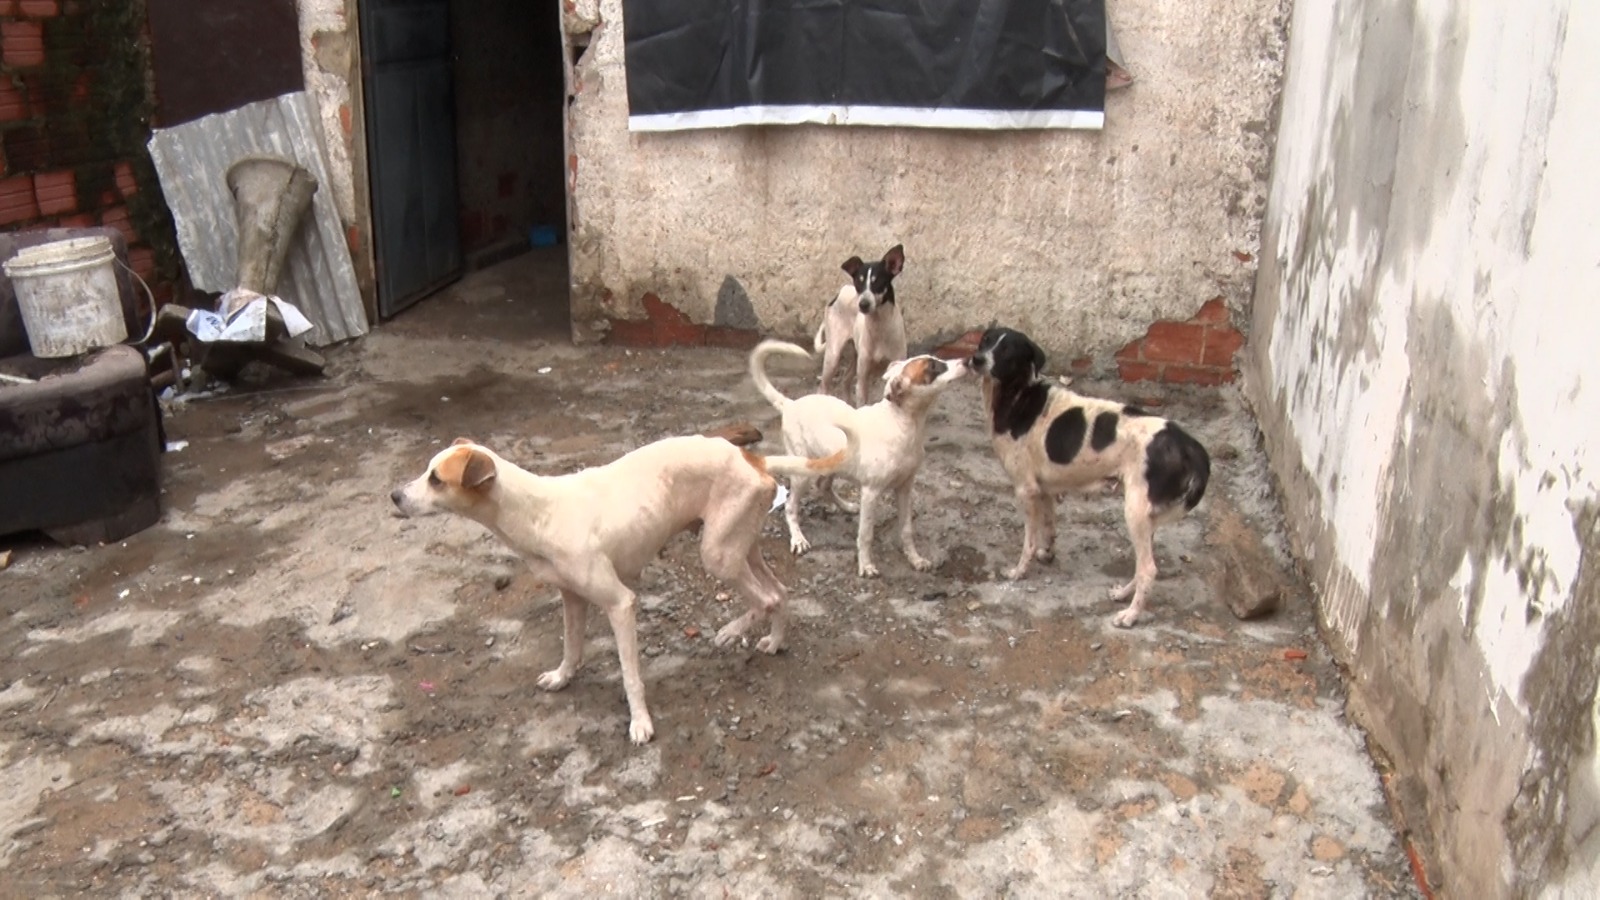 Cachorros são resgatados após denúncia de zoofilia em residência na zona Leste de Teresina